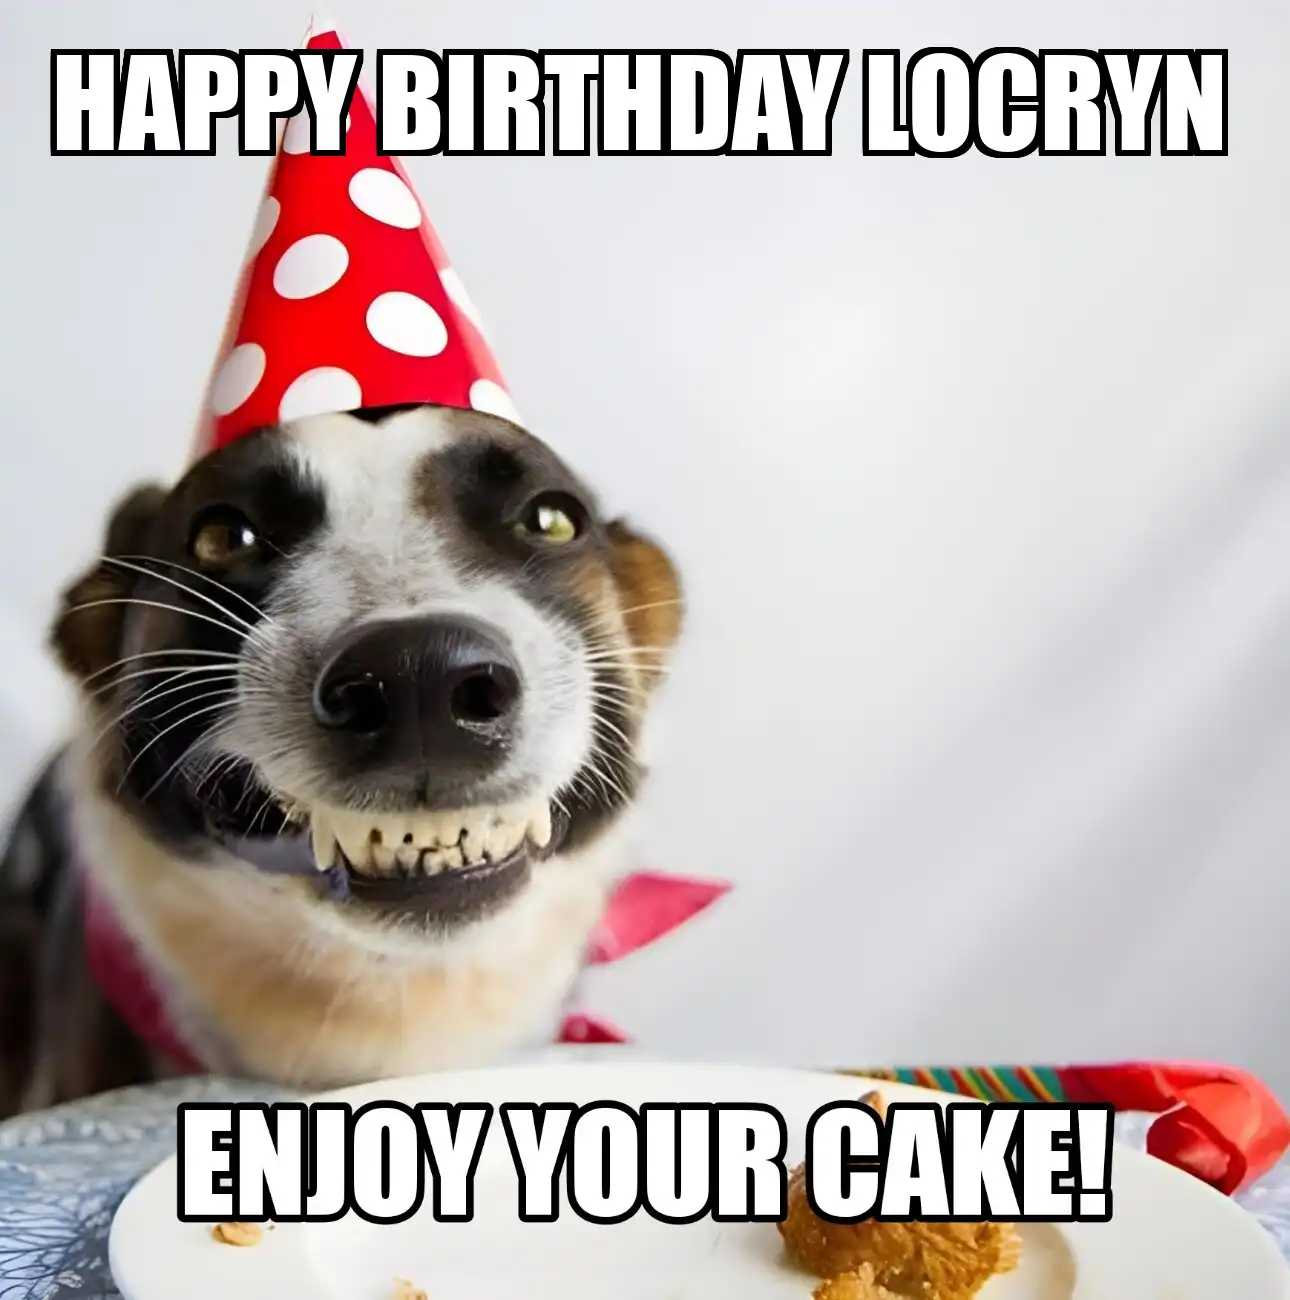 Happy Birthday Locryn Enjoy Your Cake Dog Meme